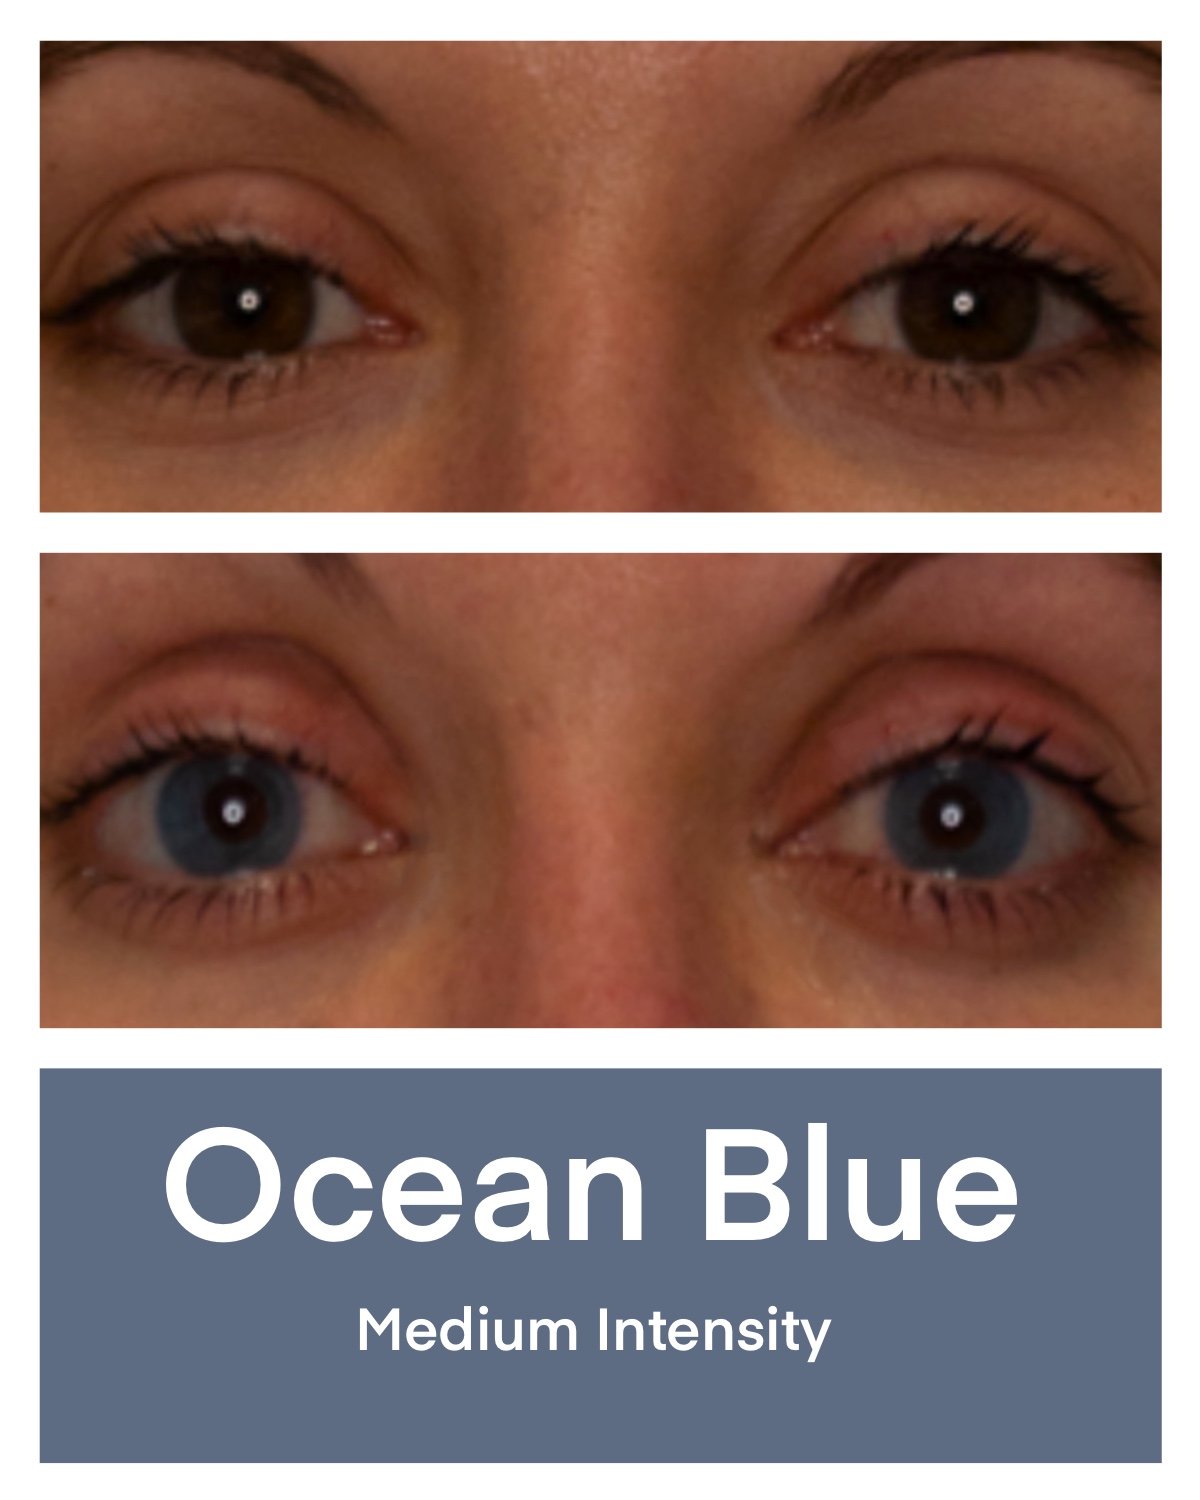 Ocean Blue medium intensity